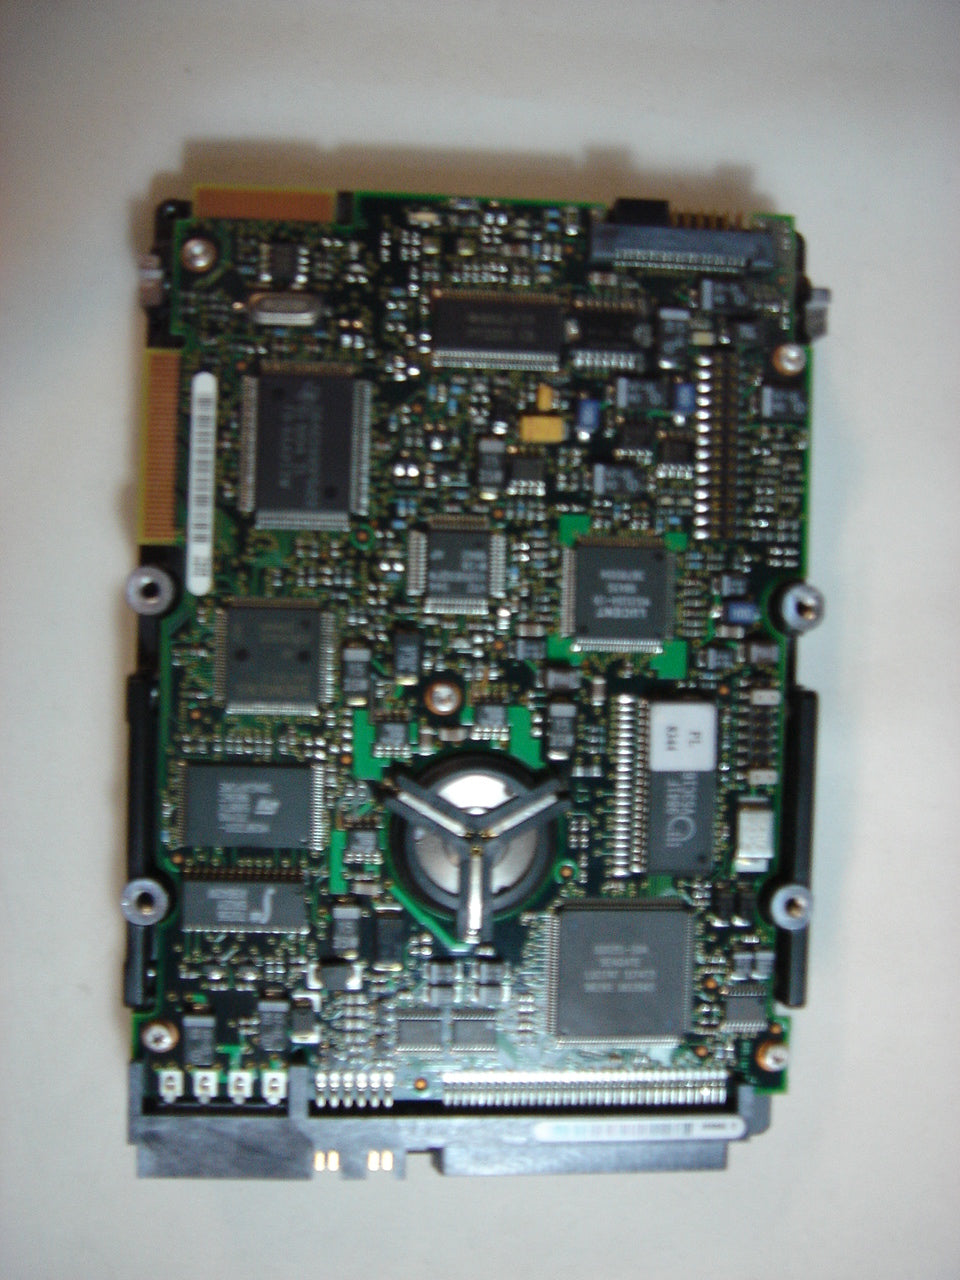 9J4002-010 - Seagate 4.5GB SCSI 68 Pin 7200rpm 3.5in Barracuda HDD - USED